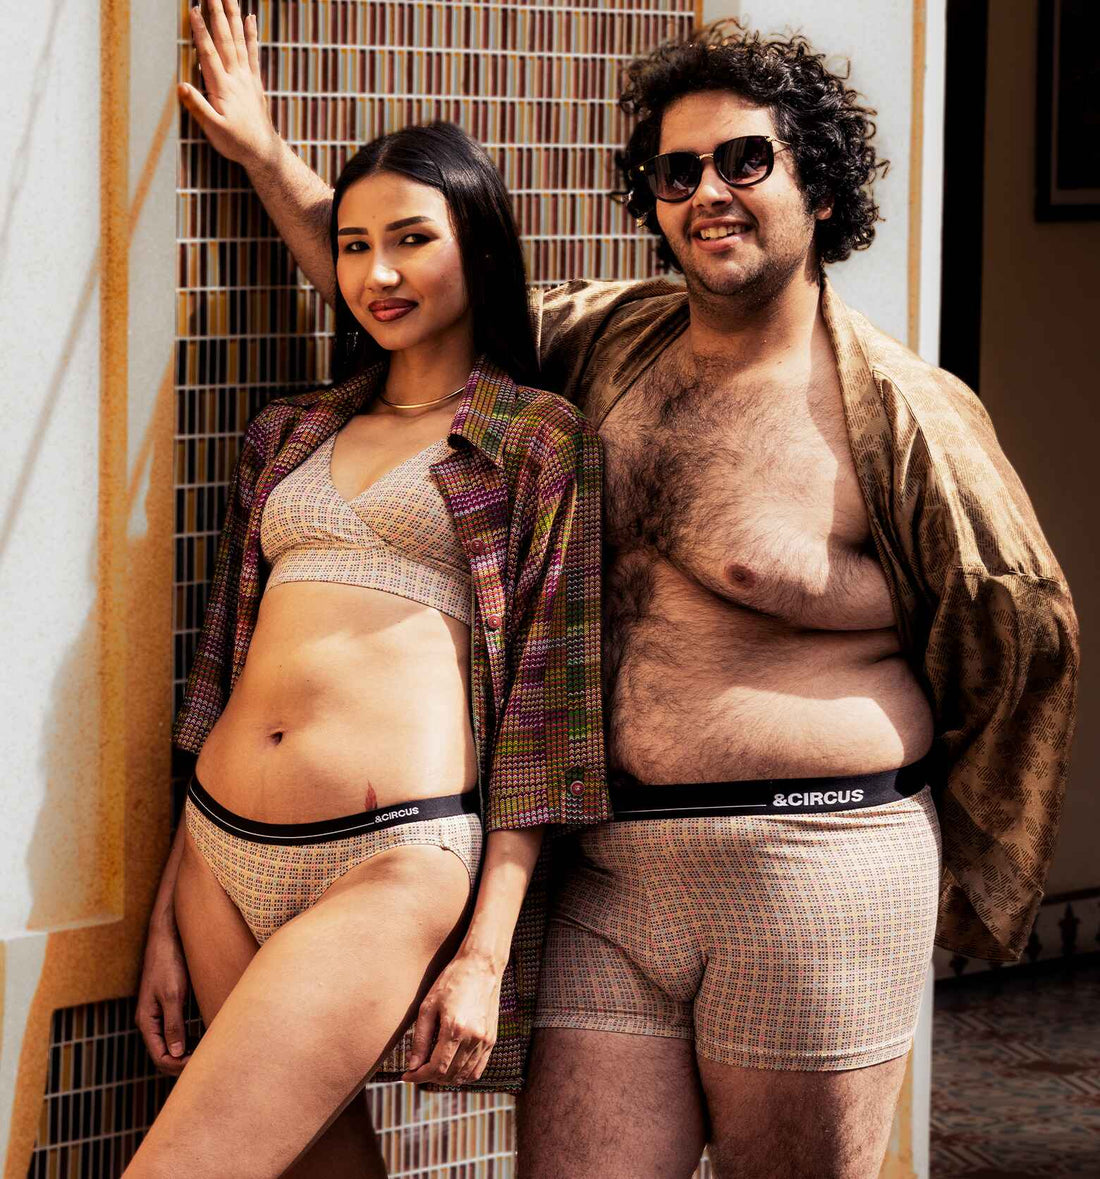 Couple matching underwear